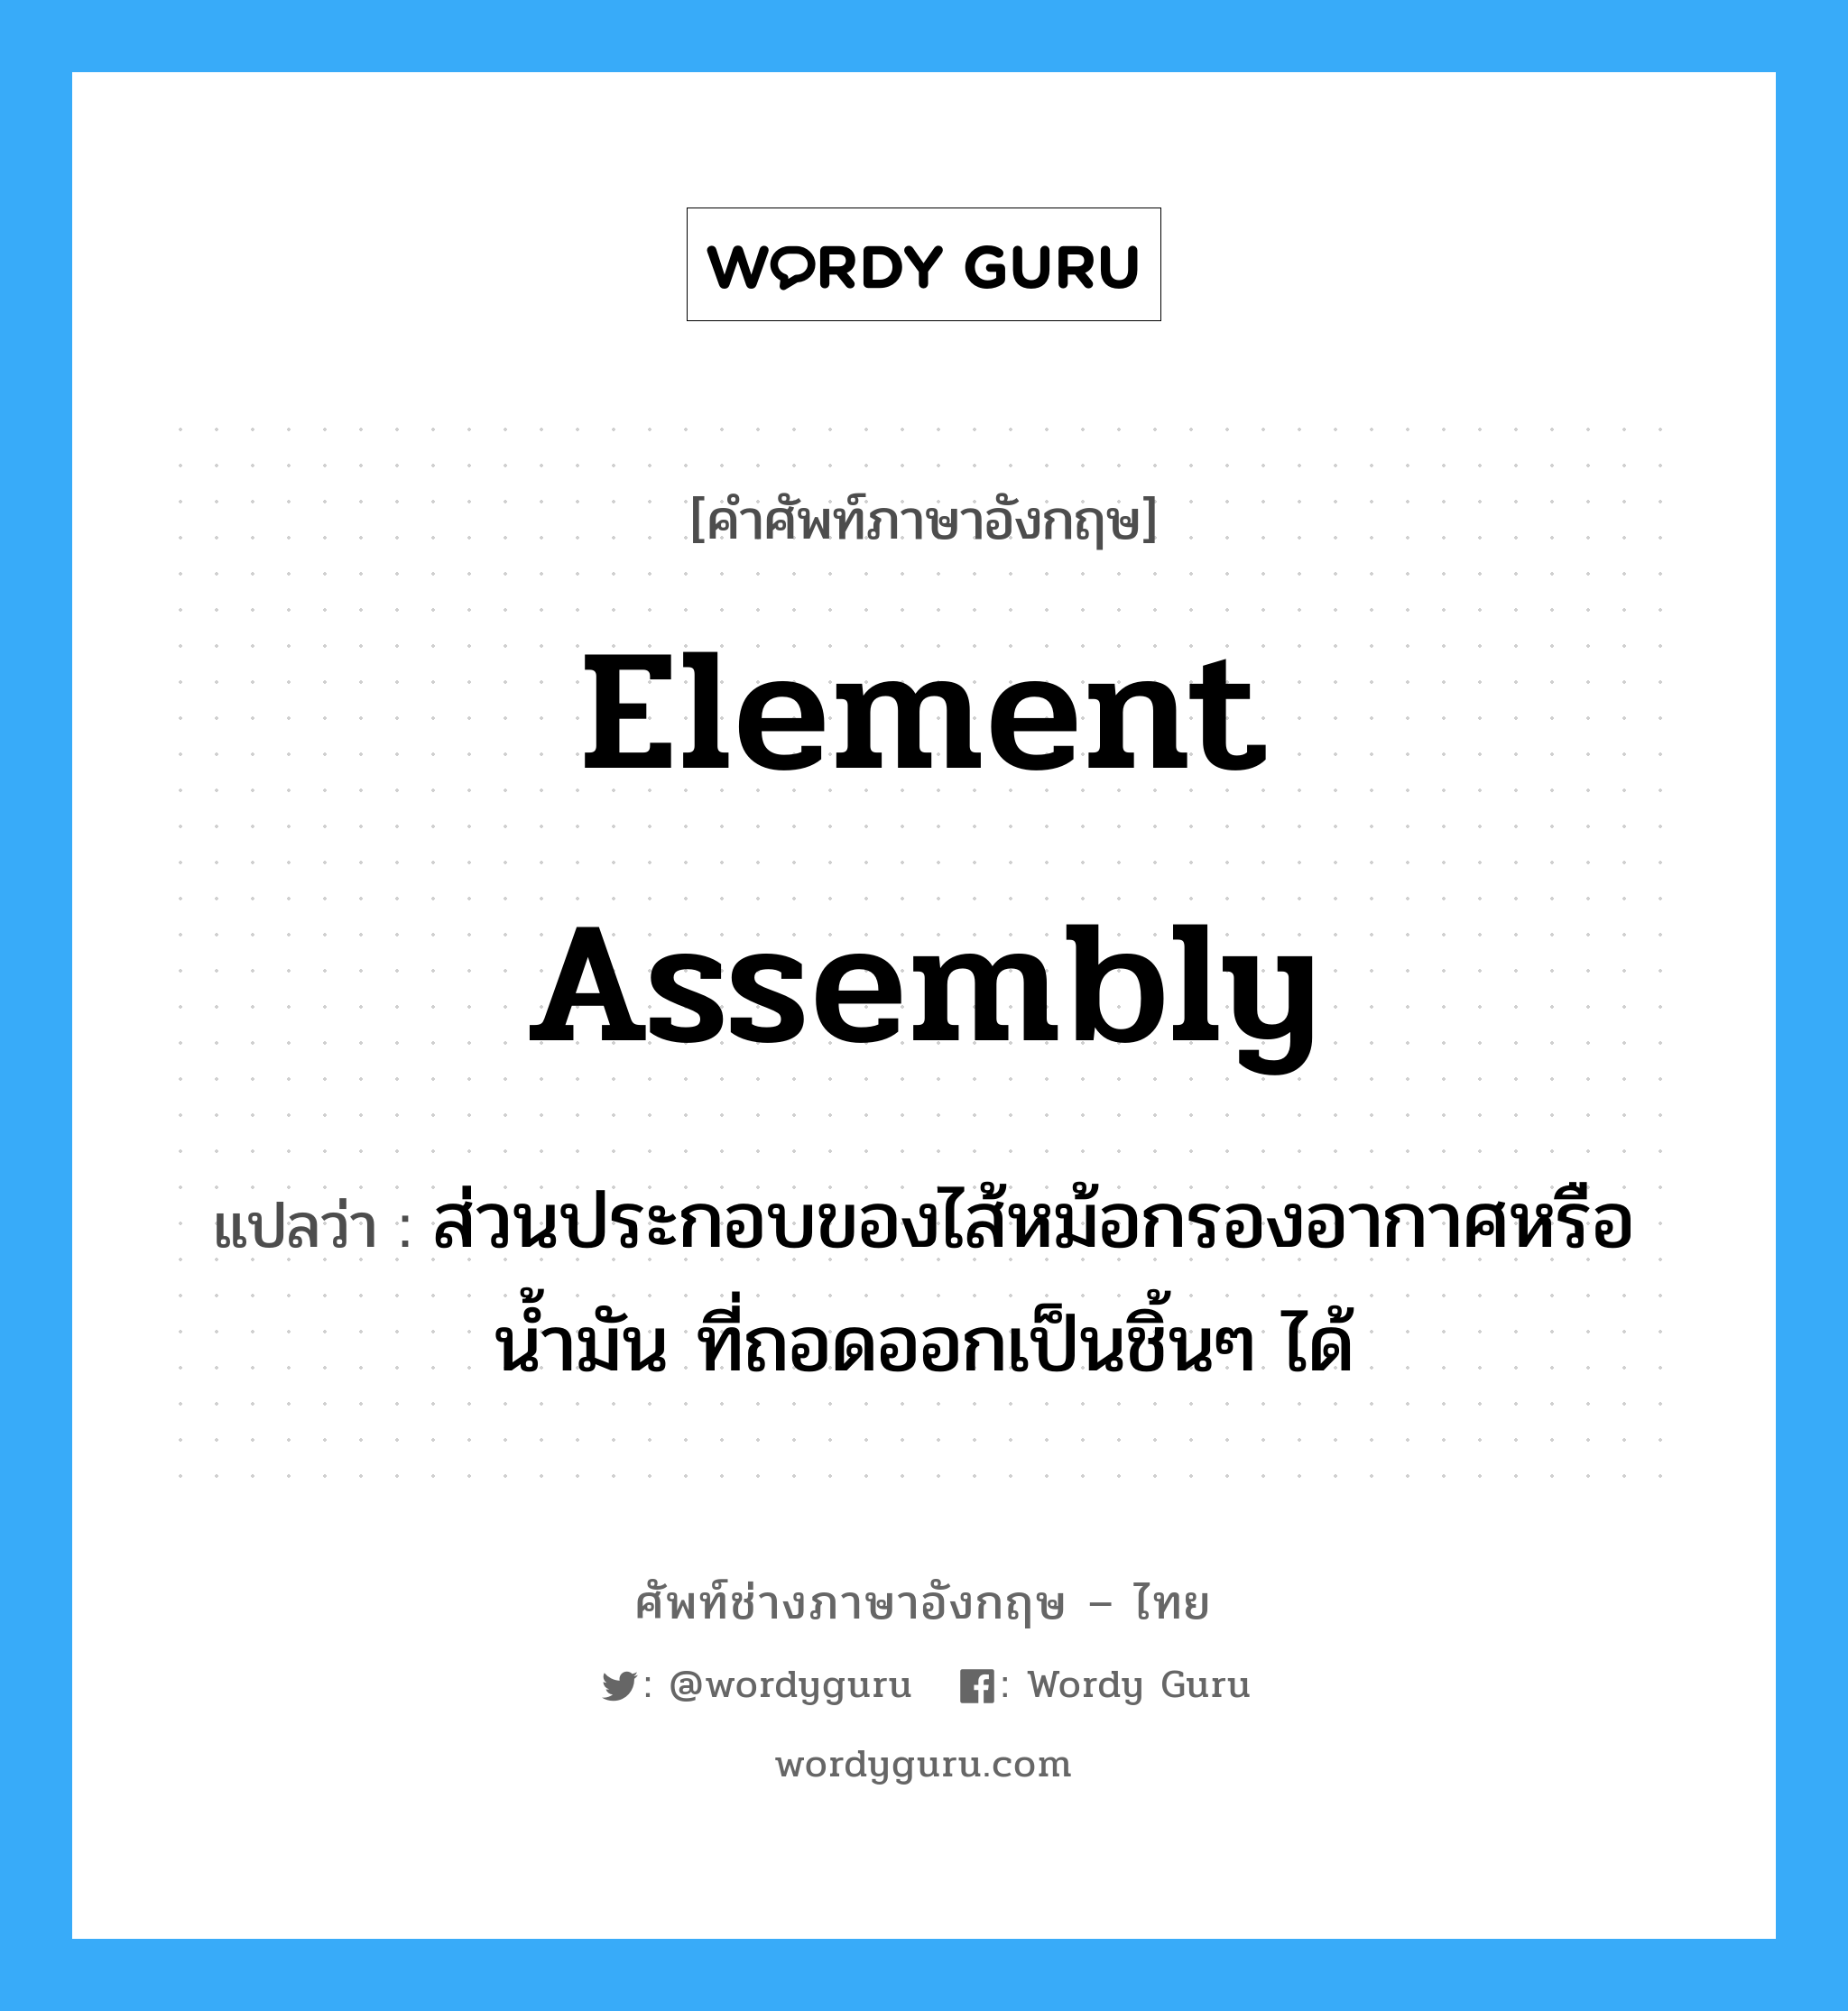 element assembly แปลว่า?, คำศัพท์ช่างภาษาอังกฤษ - ไทย element assembly คำศัพท์ภาษาอังกฤษ element assembly แปลว่า ส่วนประกอบของไส้หม้อกรองอากาศหรือน้ำมัน ที่ถอดออกเป็นชิ้นๆ ได้